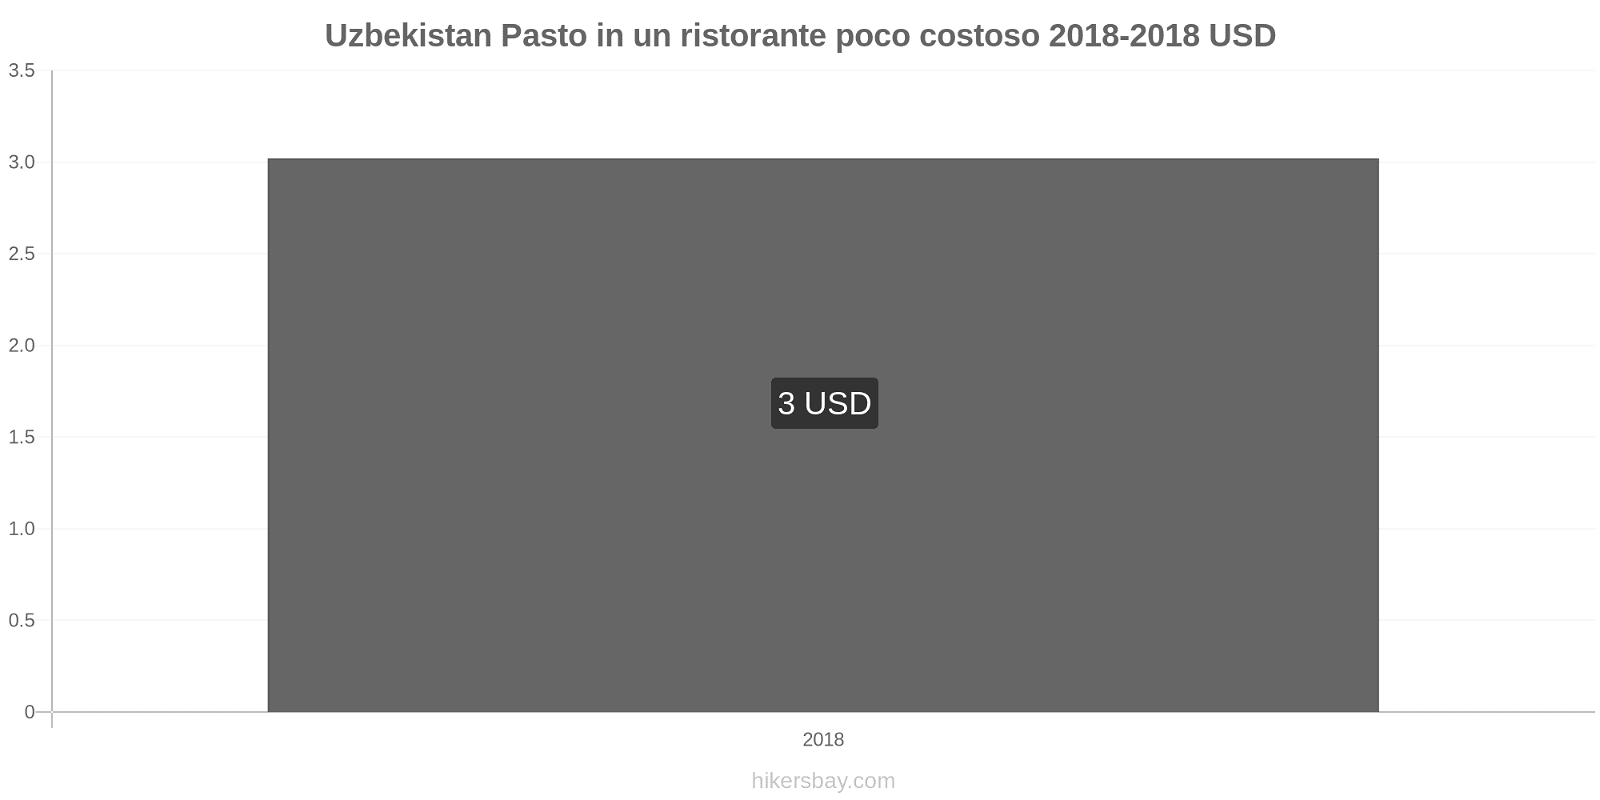 Uzbekistan cambi di prezzo Pasto in un ristorante economico hikersbay.com